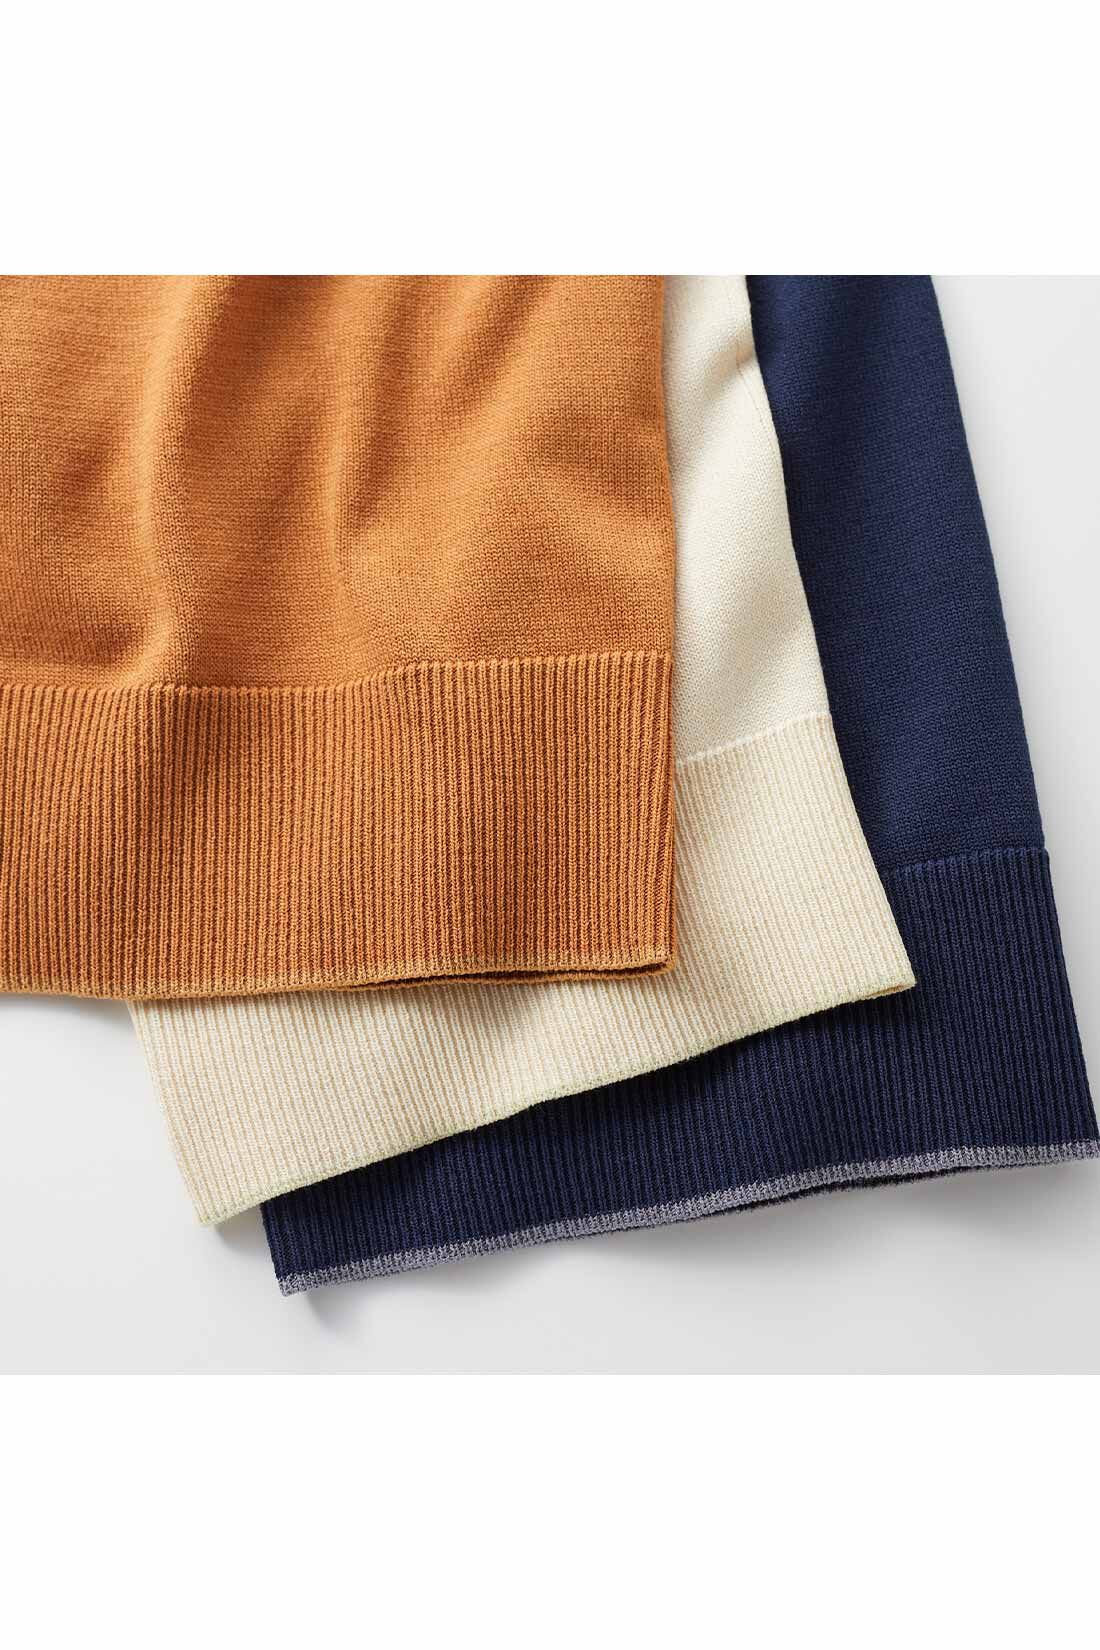 Real Stock|リブ イン コンフォート　Tシャツ感覚で着れちゃう きれいめニットトップス〈アイボリー〉|袖口の配色がさりげないアクセント。